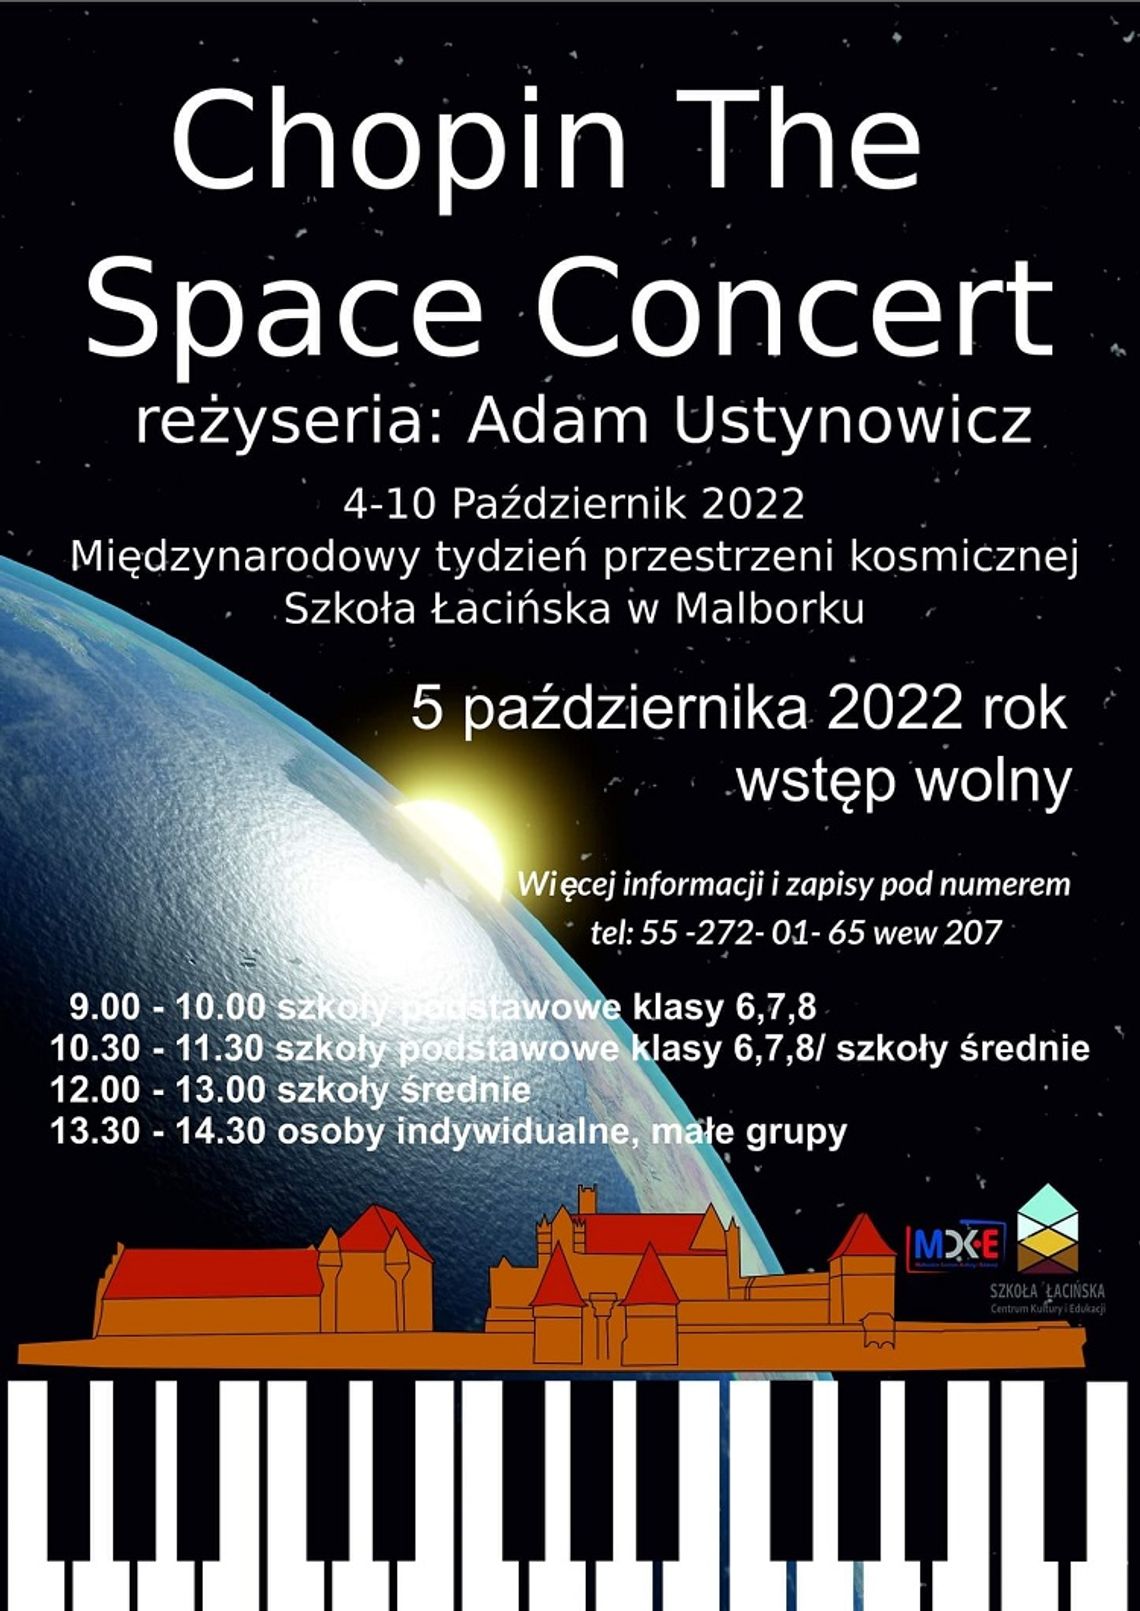 Chopin The Space Concert w malborskiej Szkole Łacińskiej